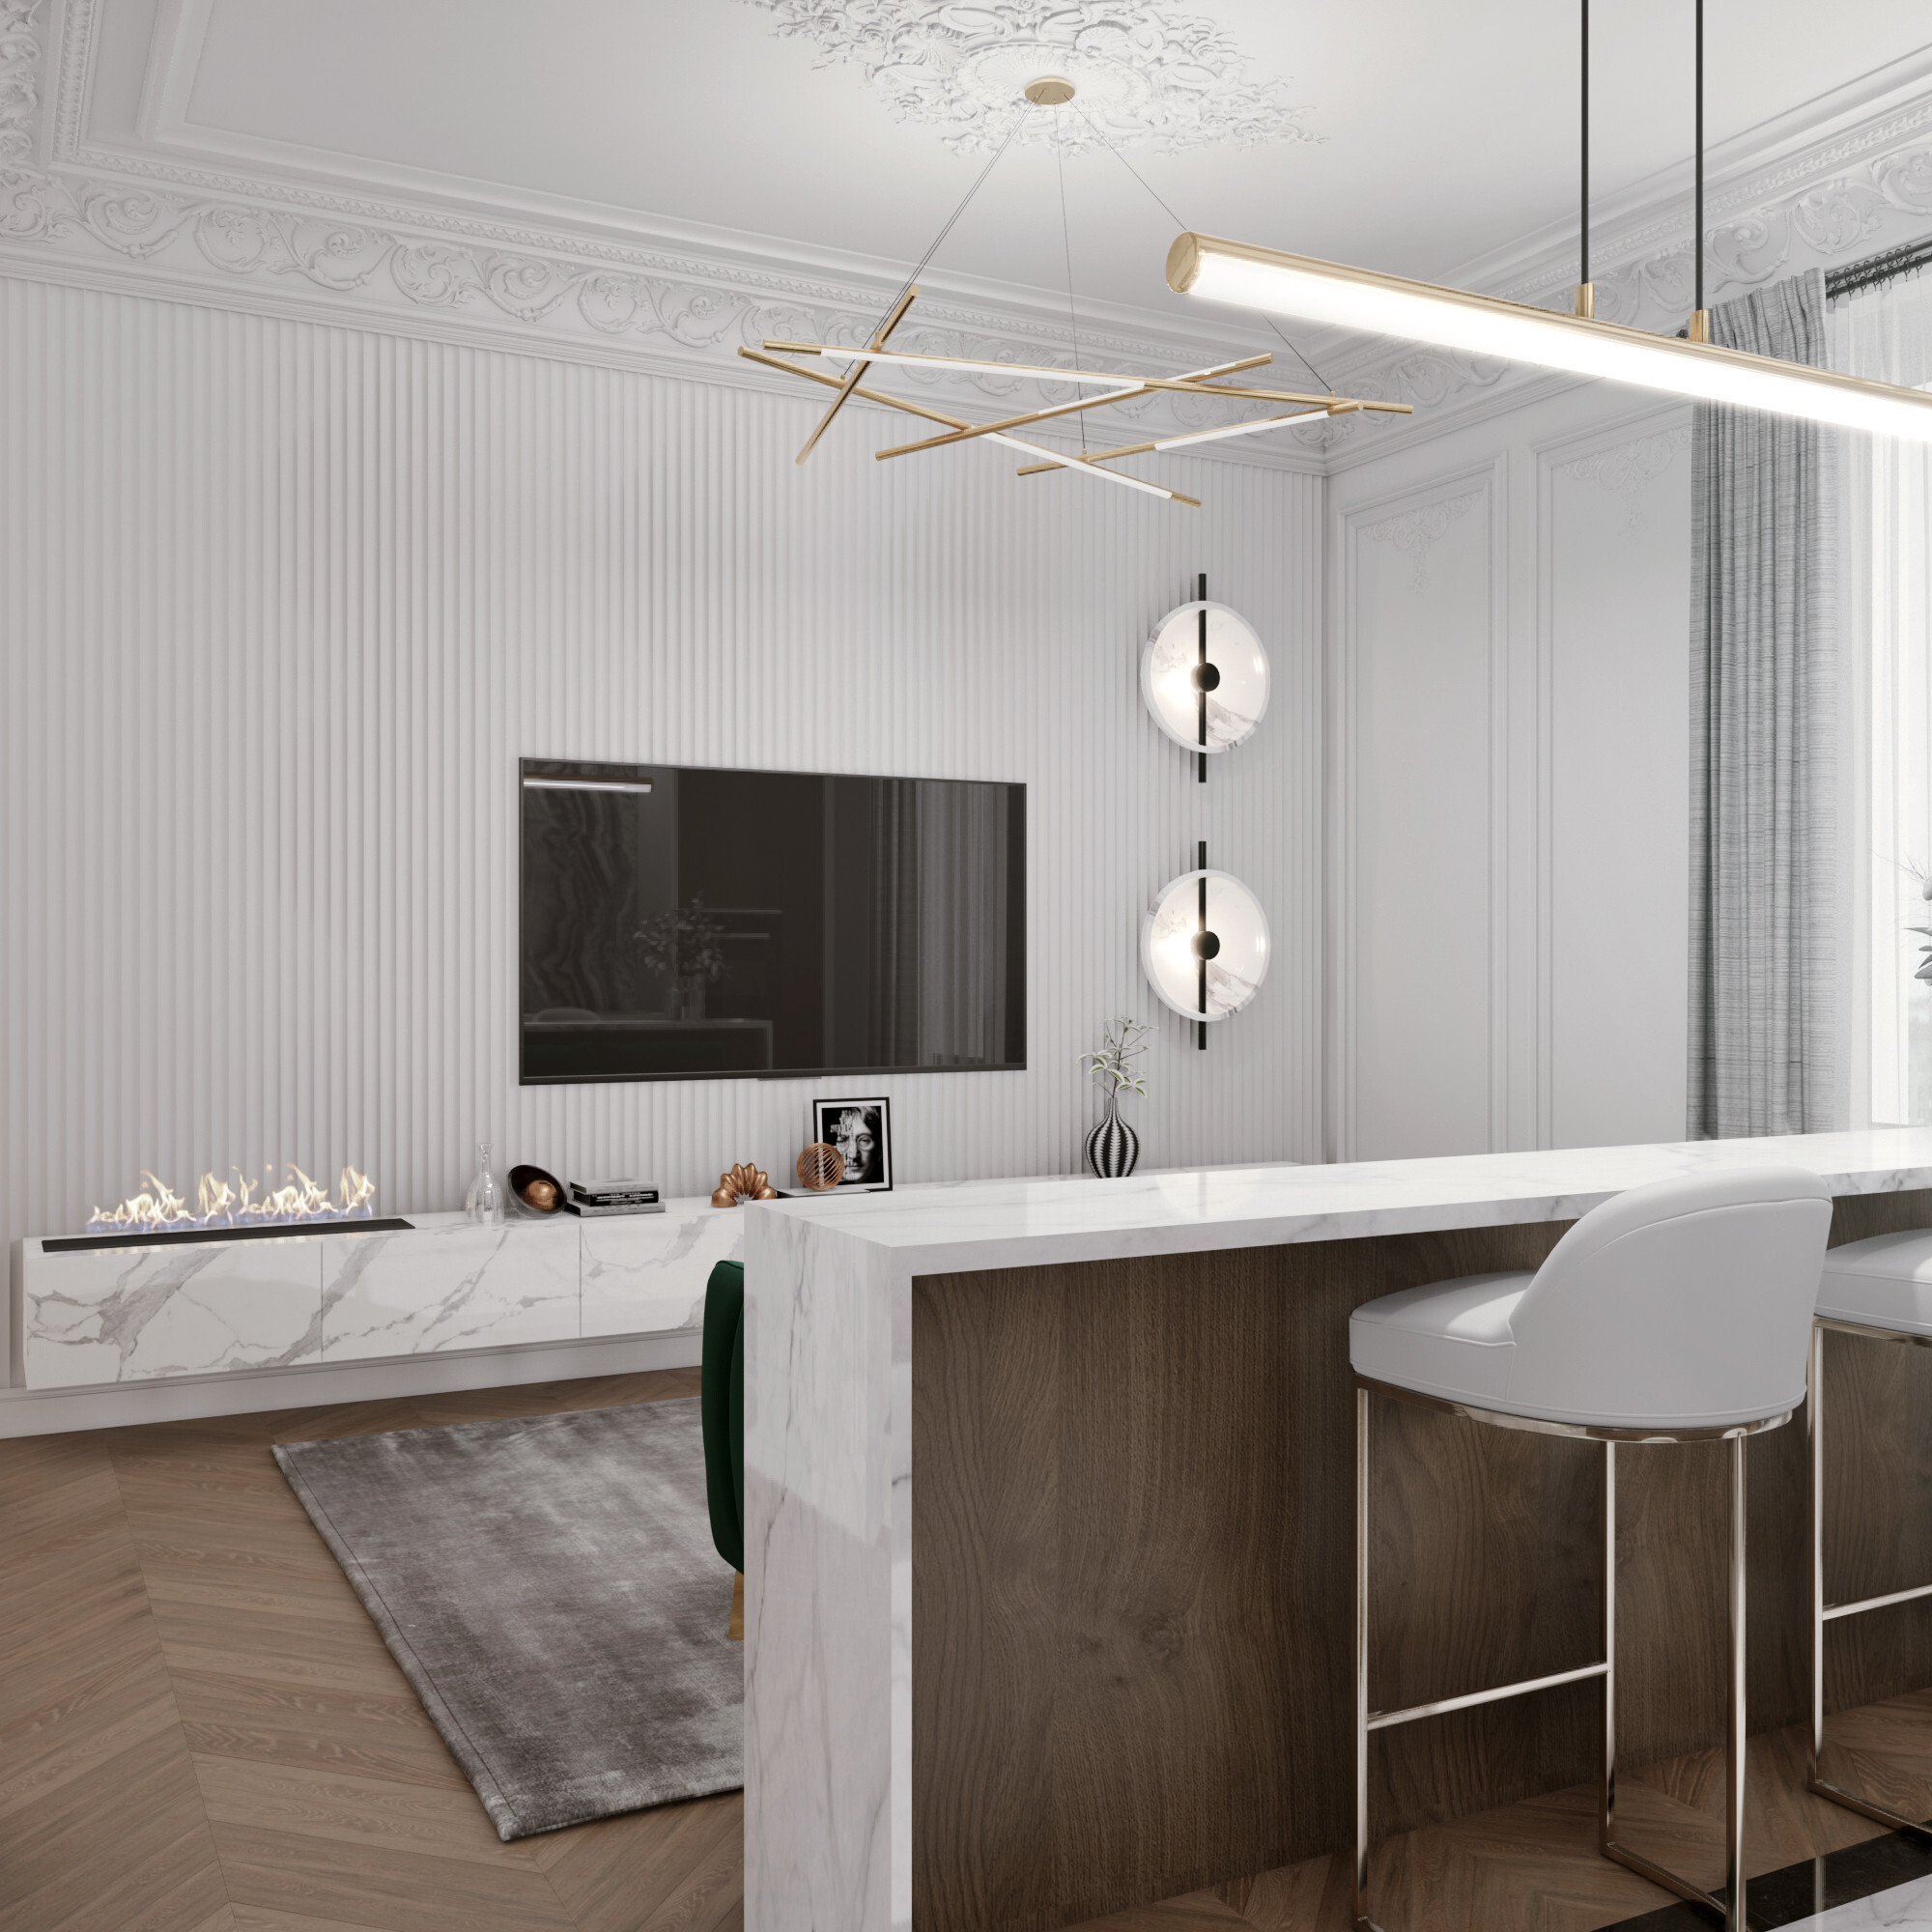 Интерьер кухни с рейками с подсветкой, подсветкой настенной и подсветкой светодиодной в современном стиле